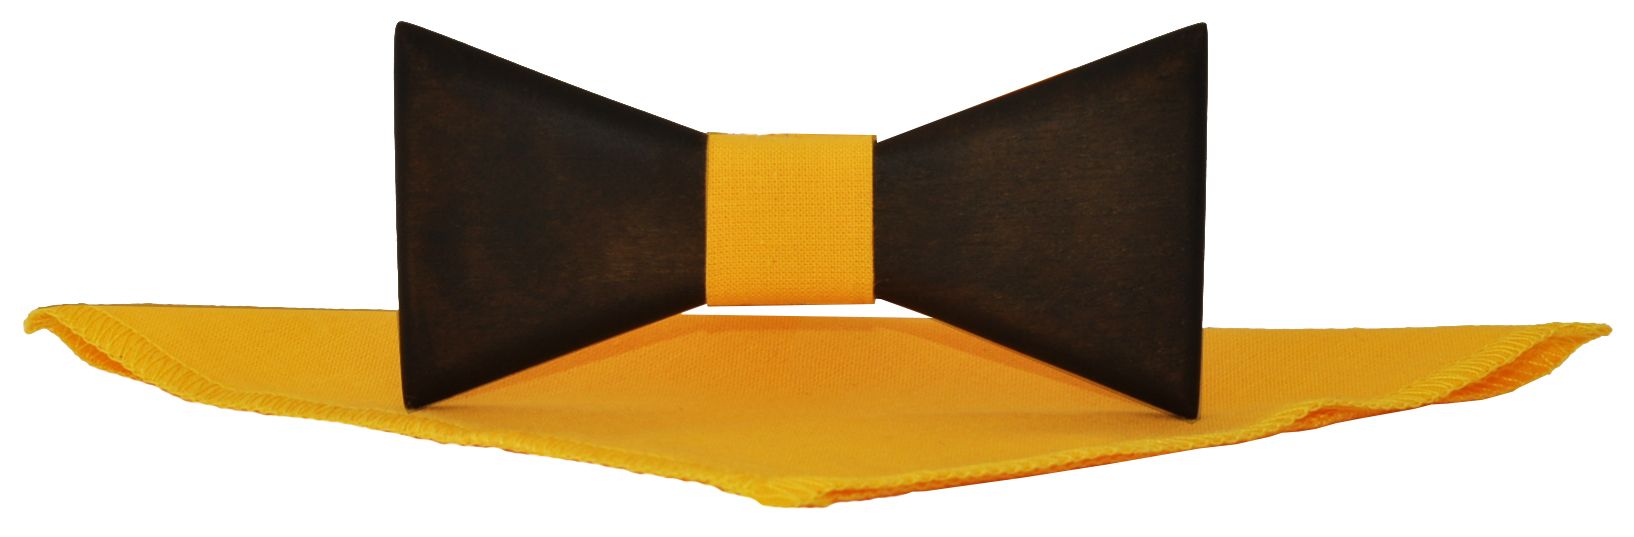 Деревянная галстук-бабочка треугольная с ярко-желтым платком описание: Фасон - Фигурная, Материал - Дерево, Цвет - Темно-коричневый, желтый, Размер - 10 см. х 5 см., Страна производства - Россия.